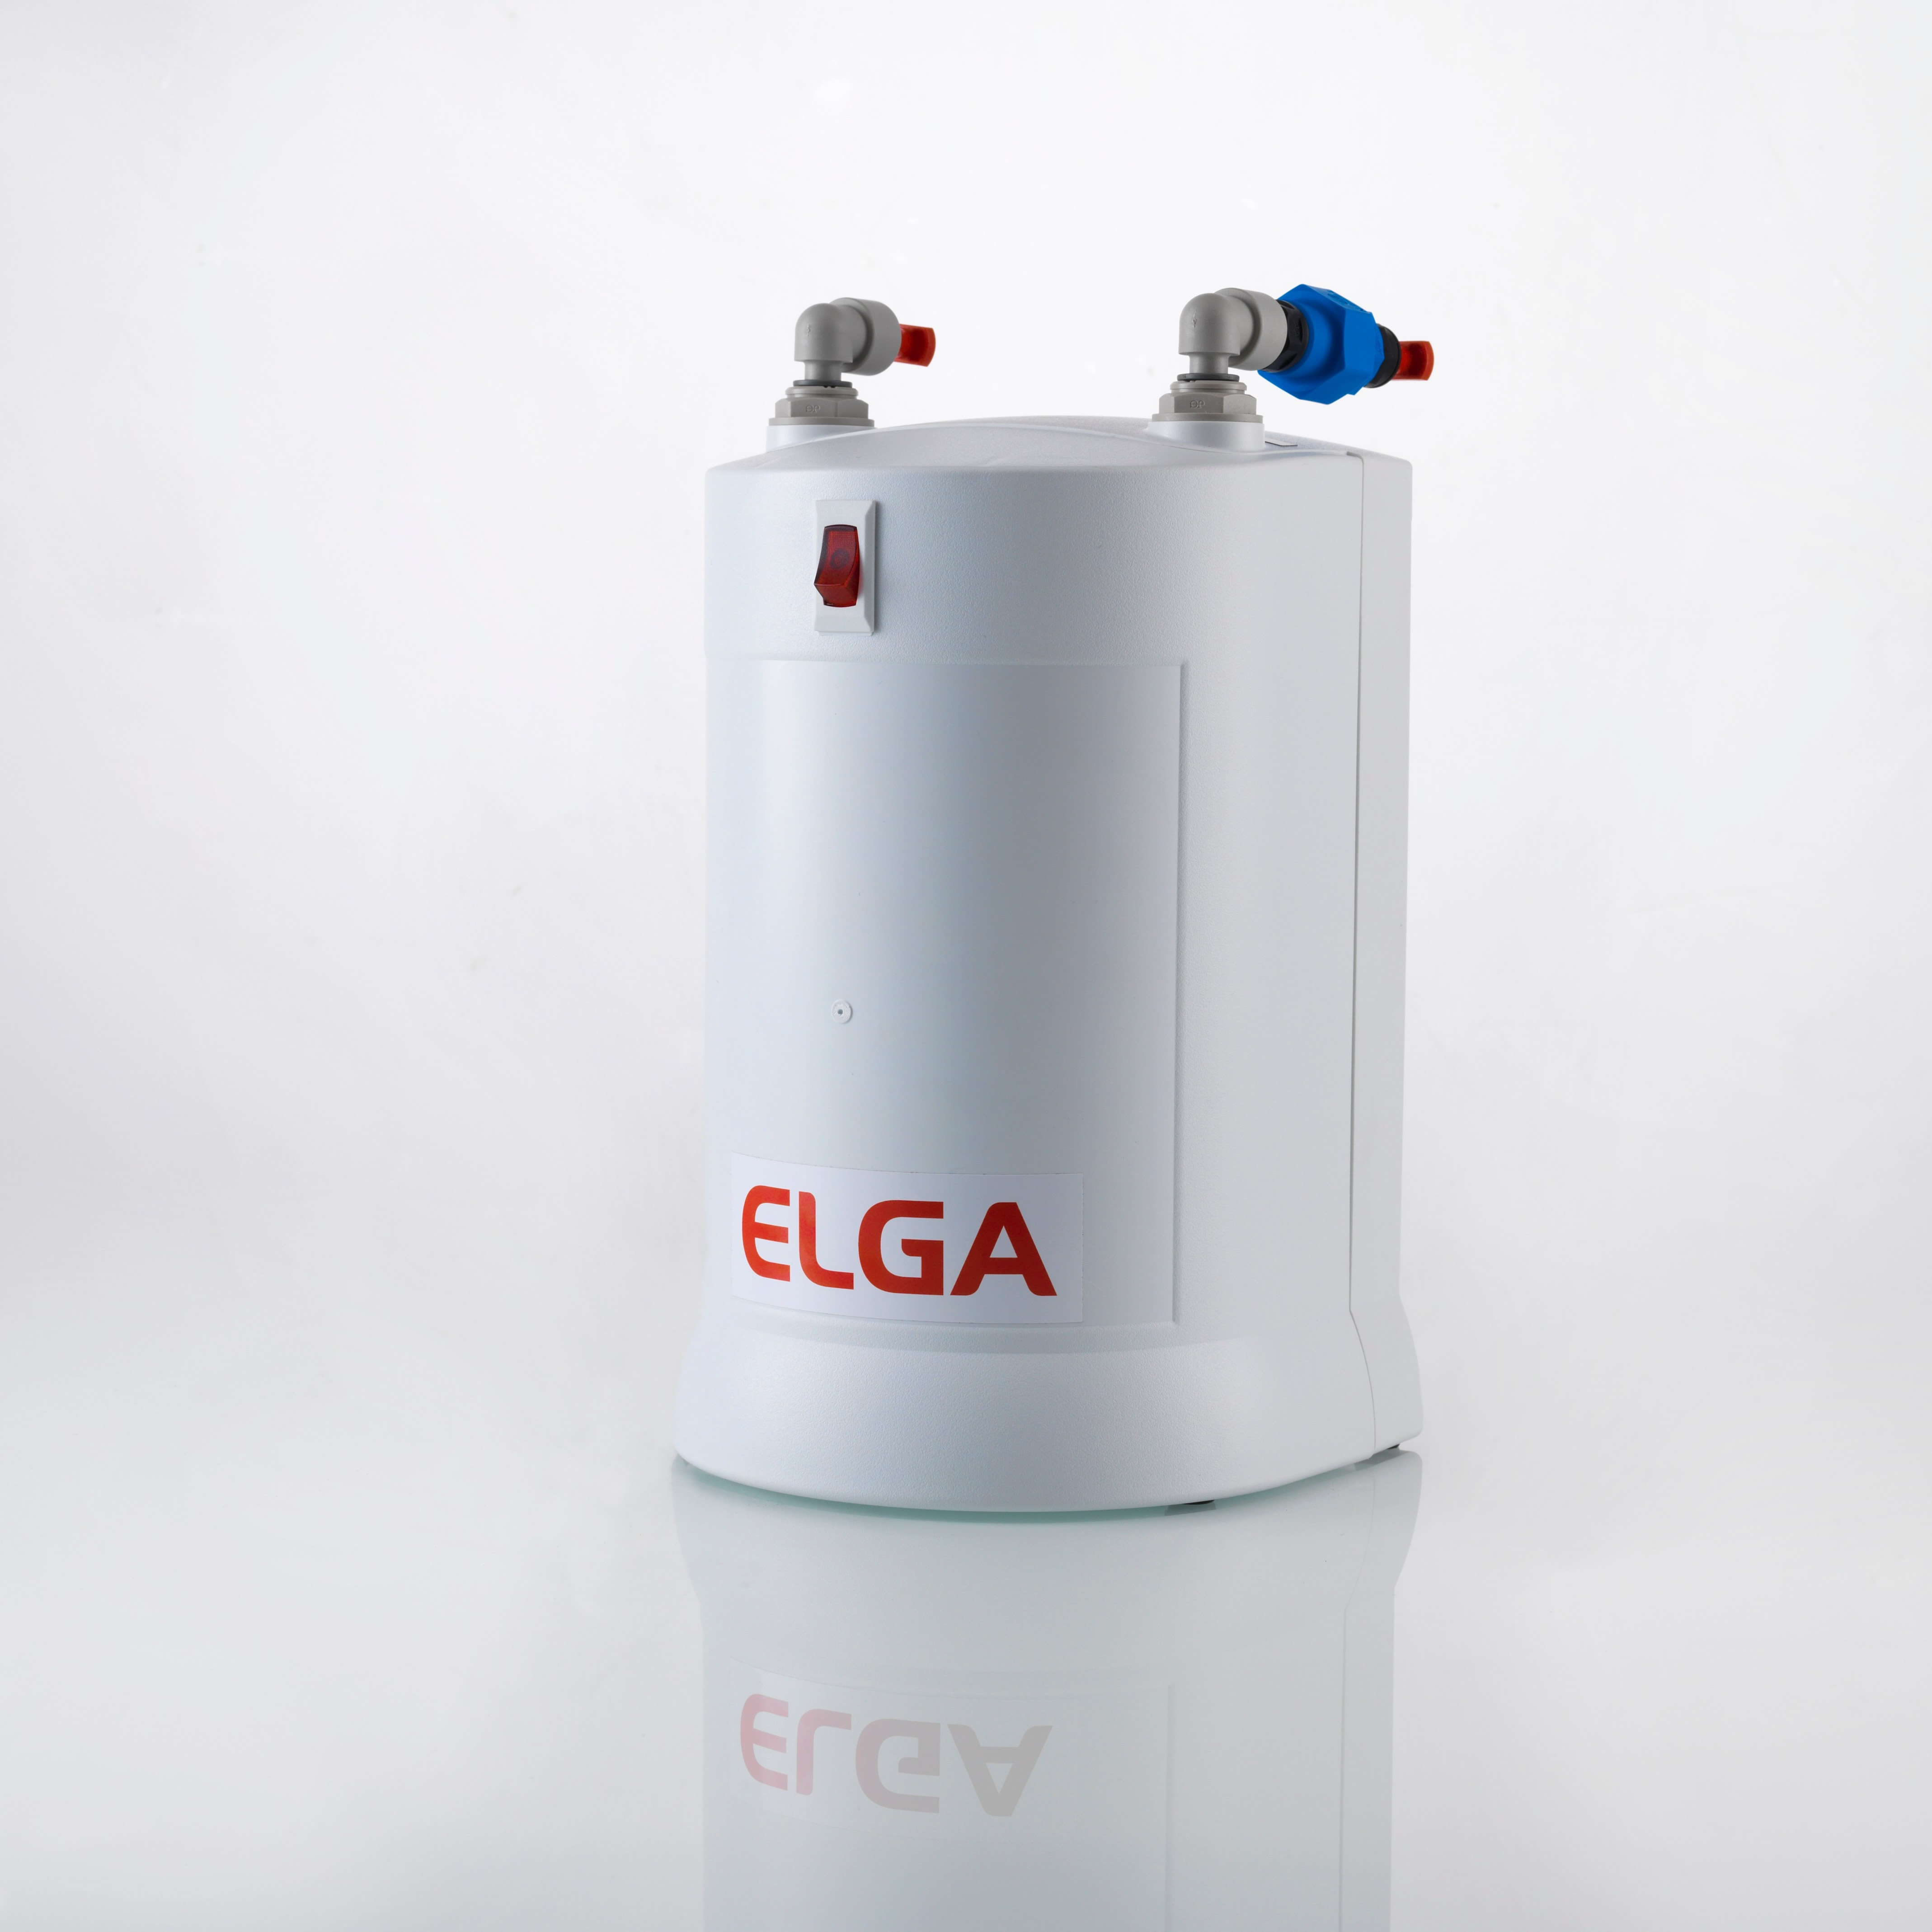 アズワン(AS ONE) ELGA純水装置用オプション・交換部品 超純水カートリッジ LC208 1個 通販 